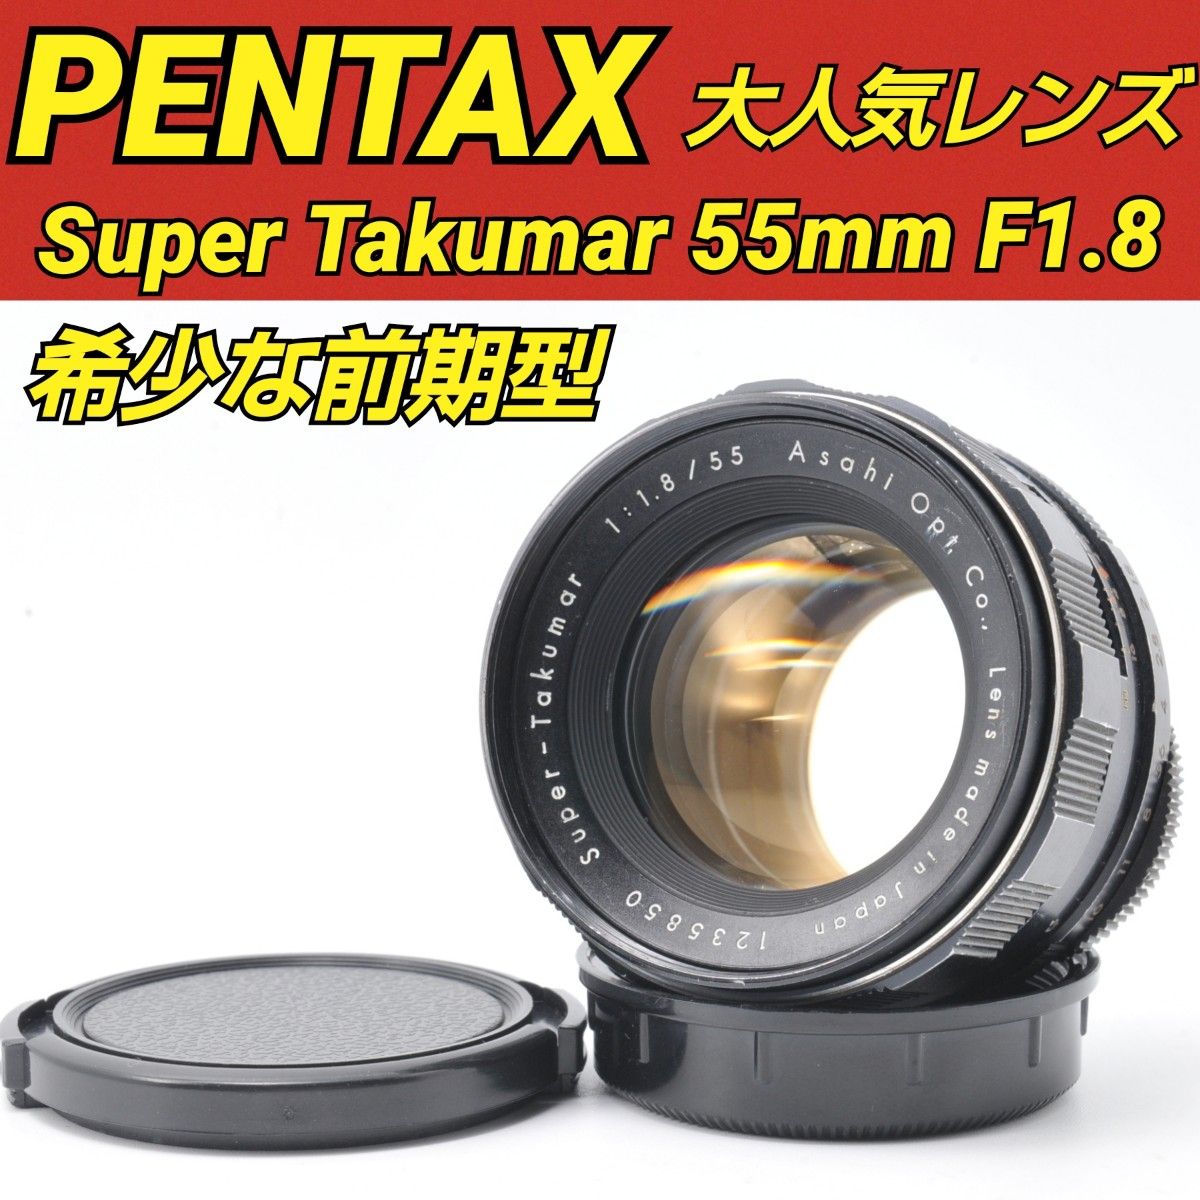 希少な前期型 PENTAX Super Takumar 55mm F1 8 ペンタックス 定番